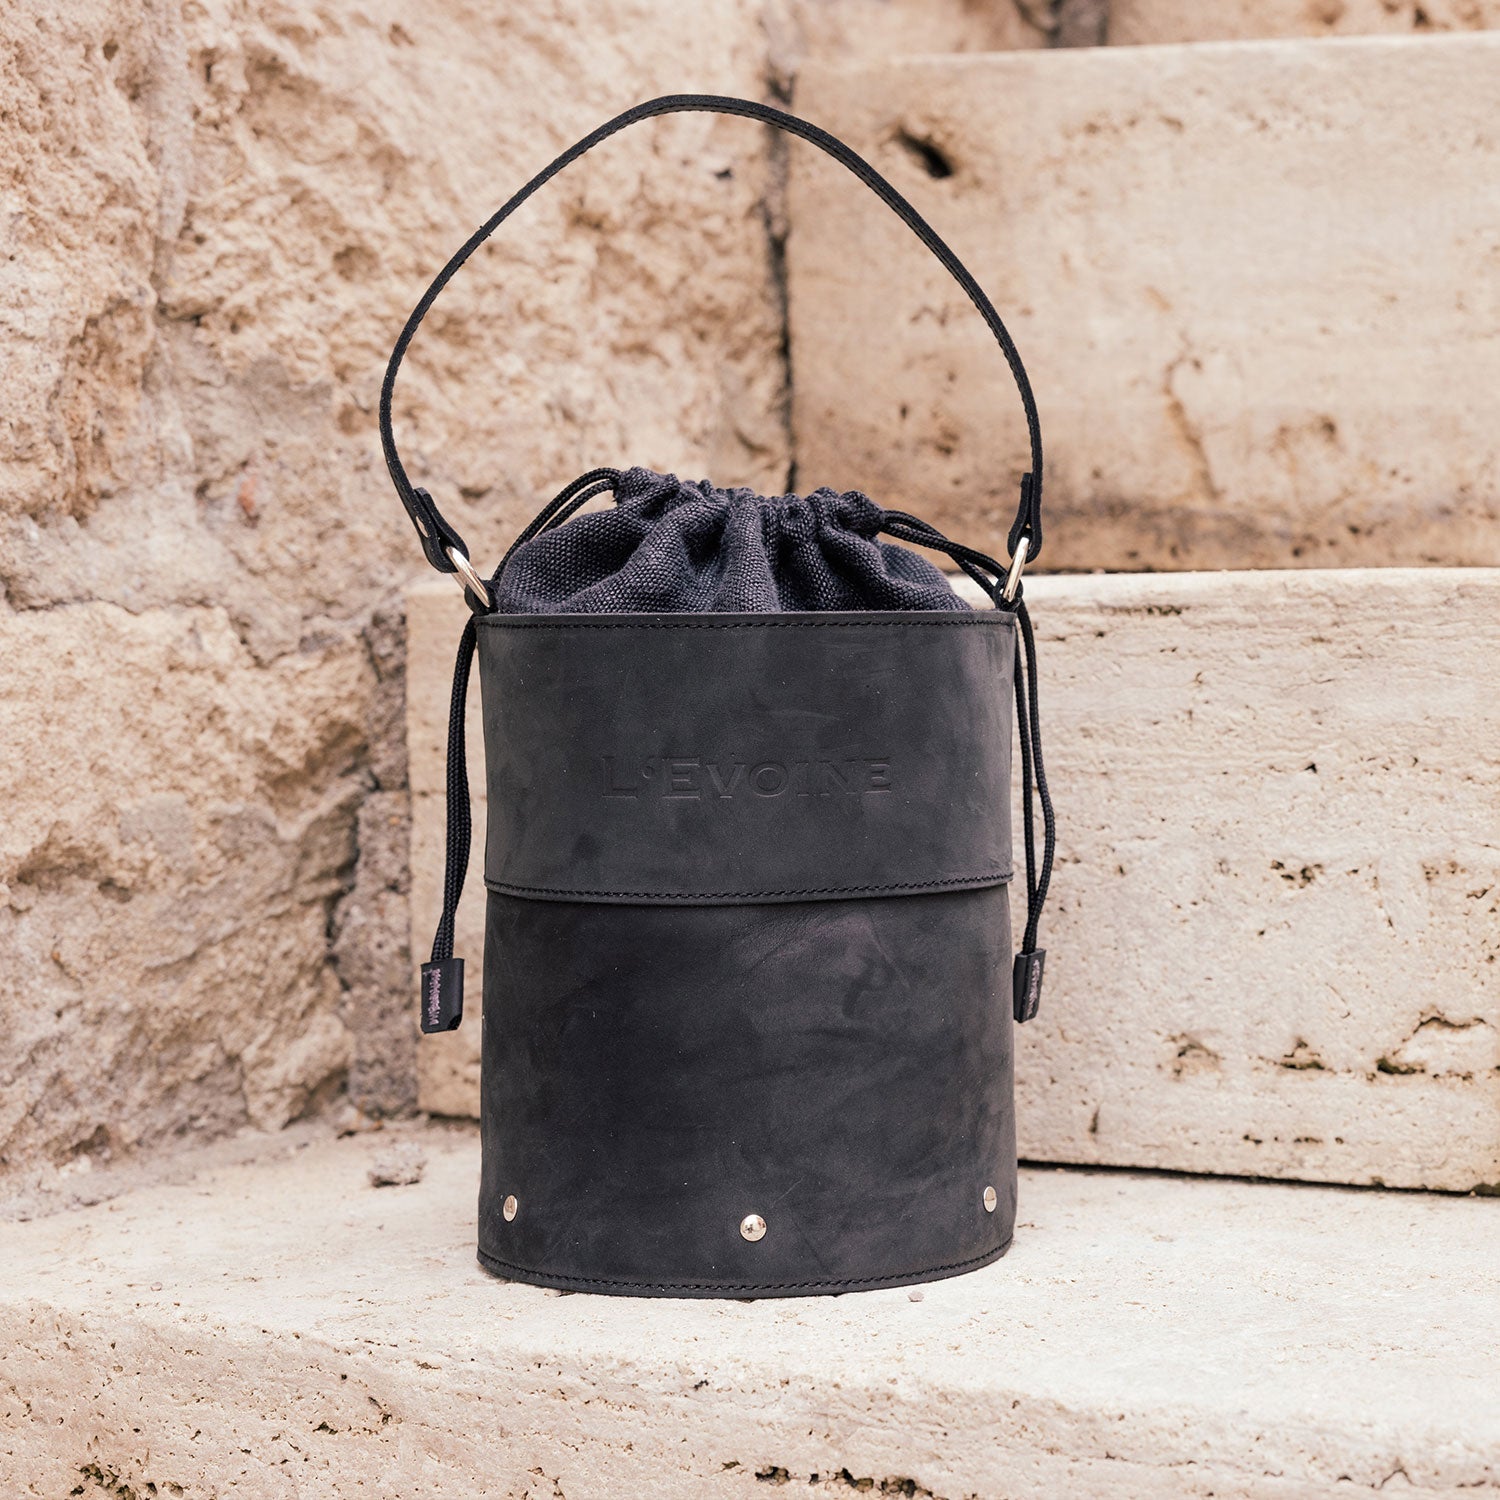 Celine Handtasche schwarz, Luxus Handtasche 